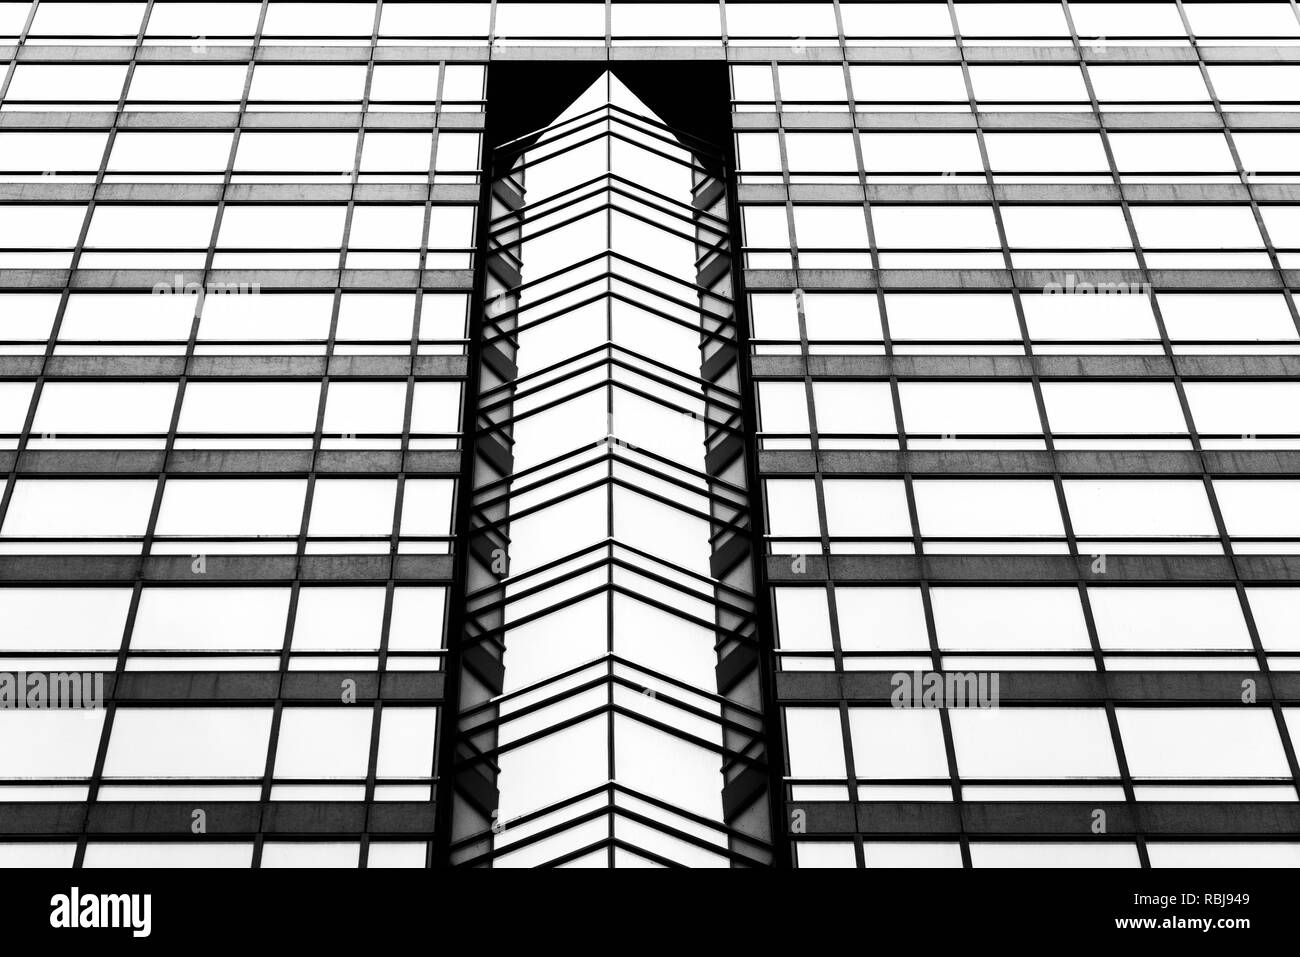 Detalles arquitectónicos de una Queen Street East Tower, en el centro de Toronto, Canadá Foto de stock